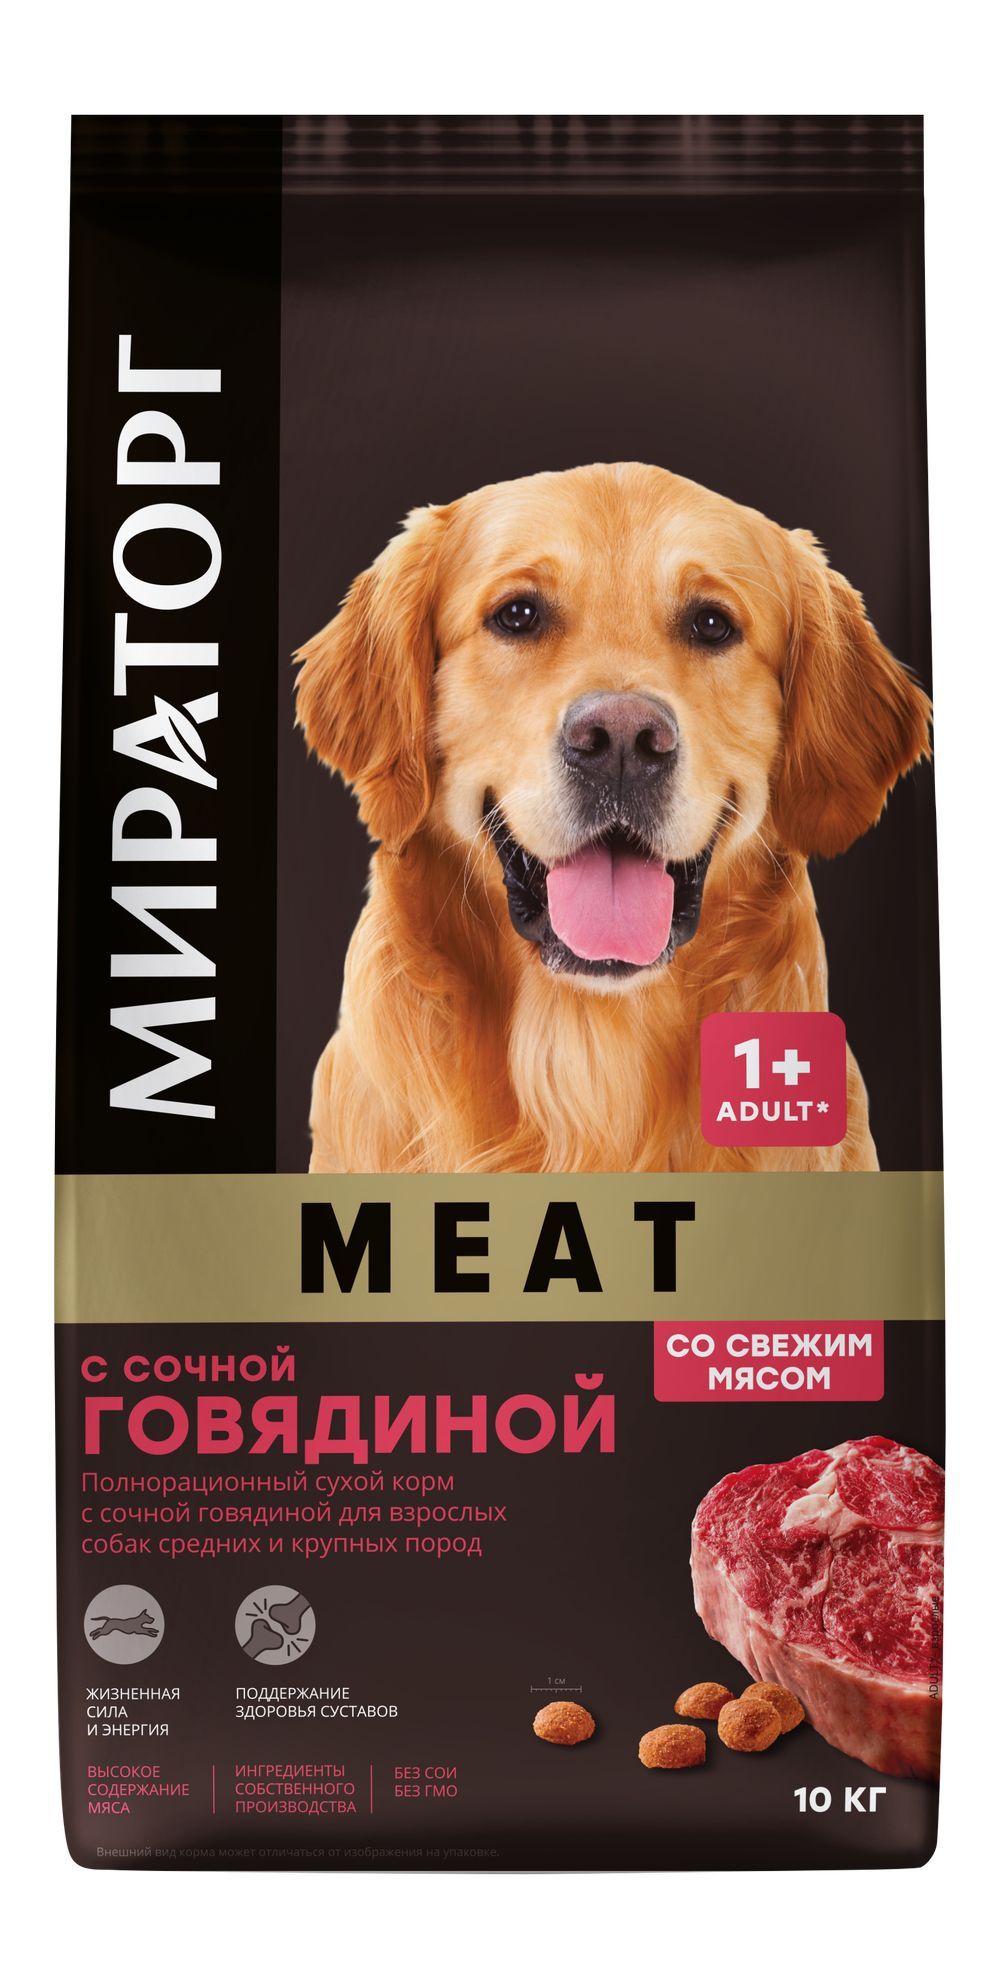 Сухой корм для собак Мираторг Winner MEAT, для средних и крупных пород, говядина, 10 кг